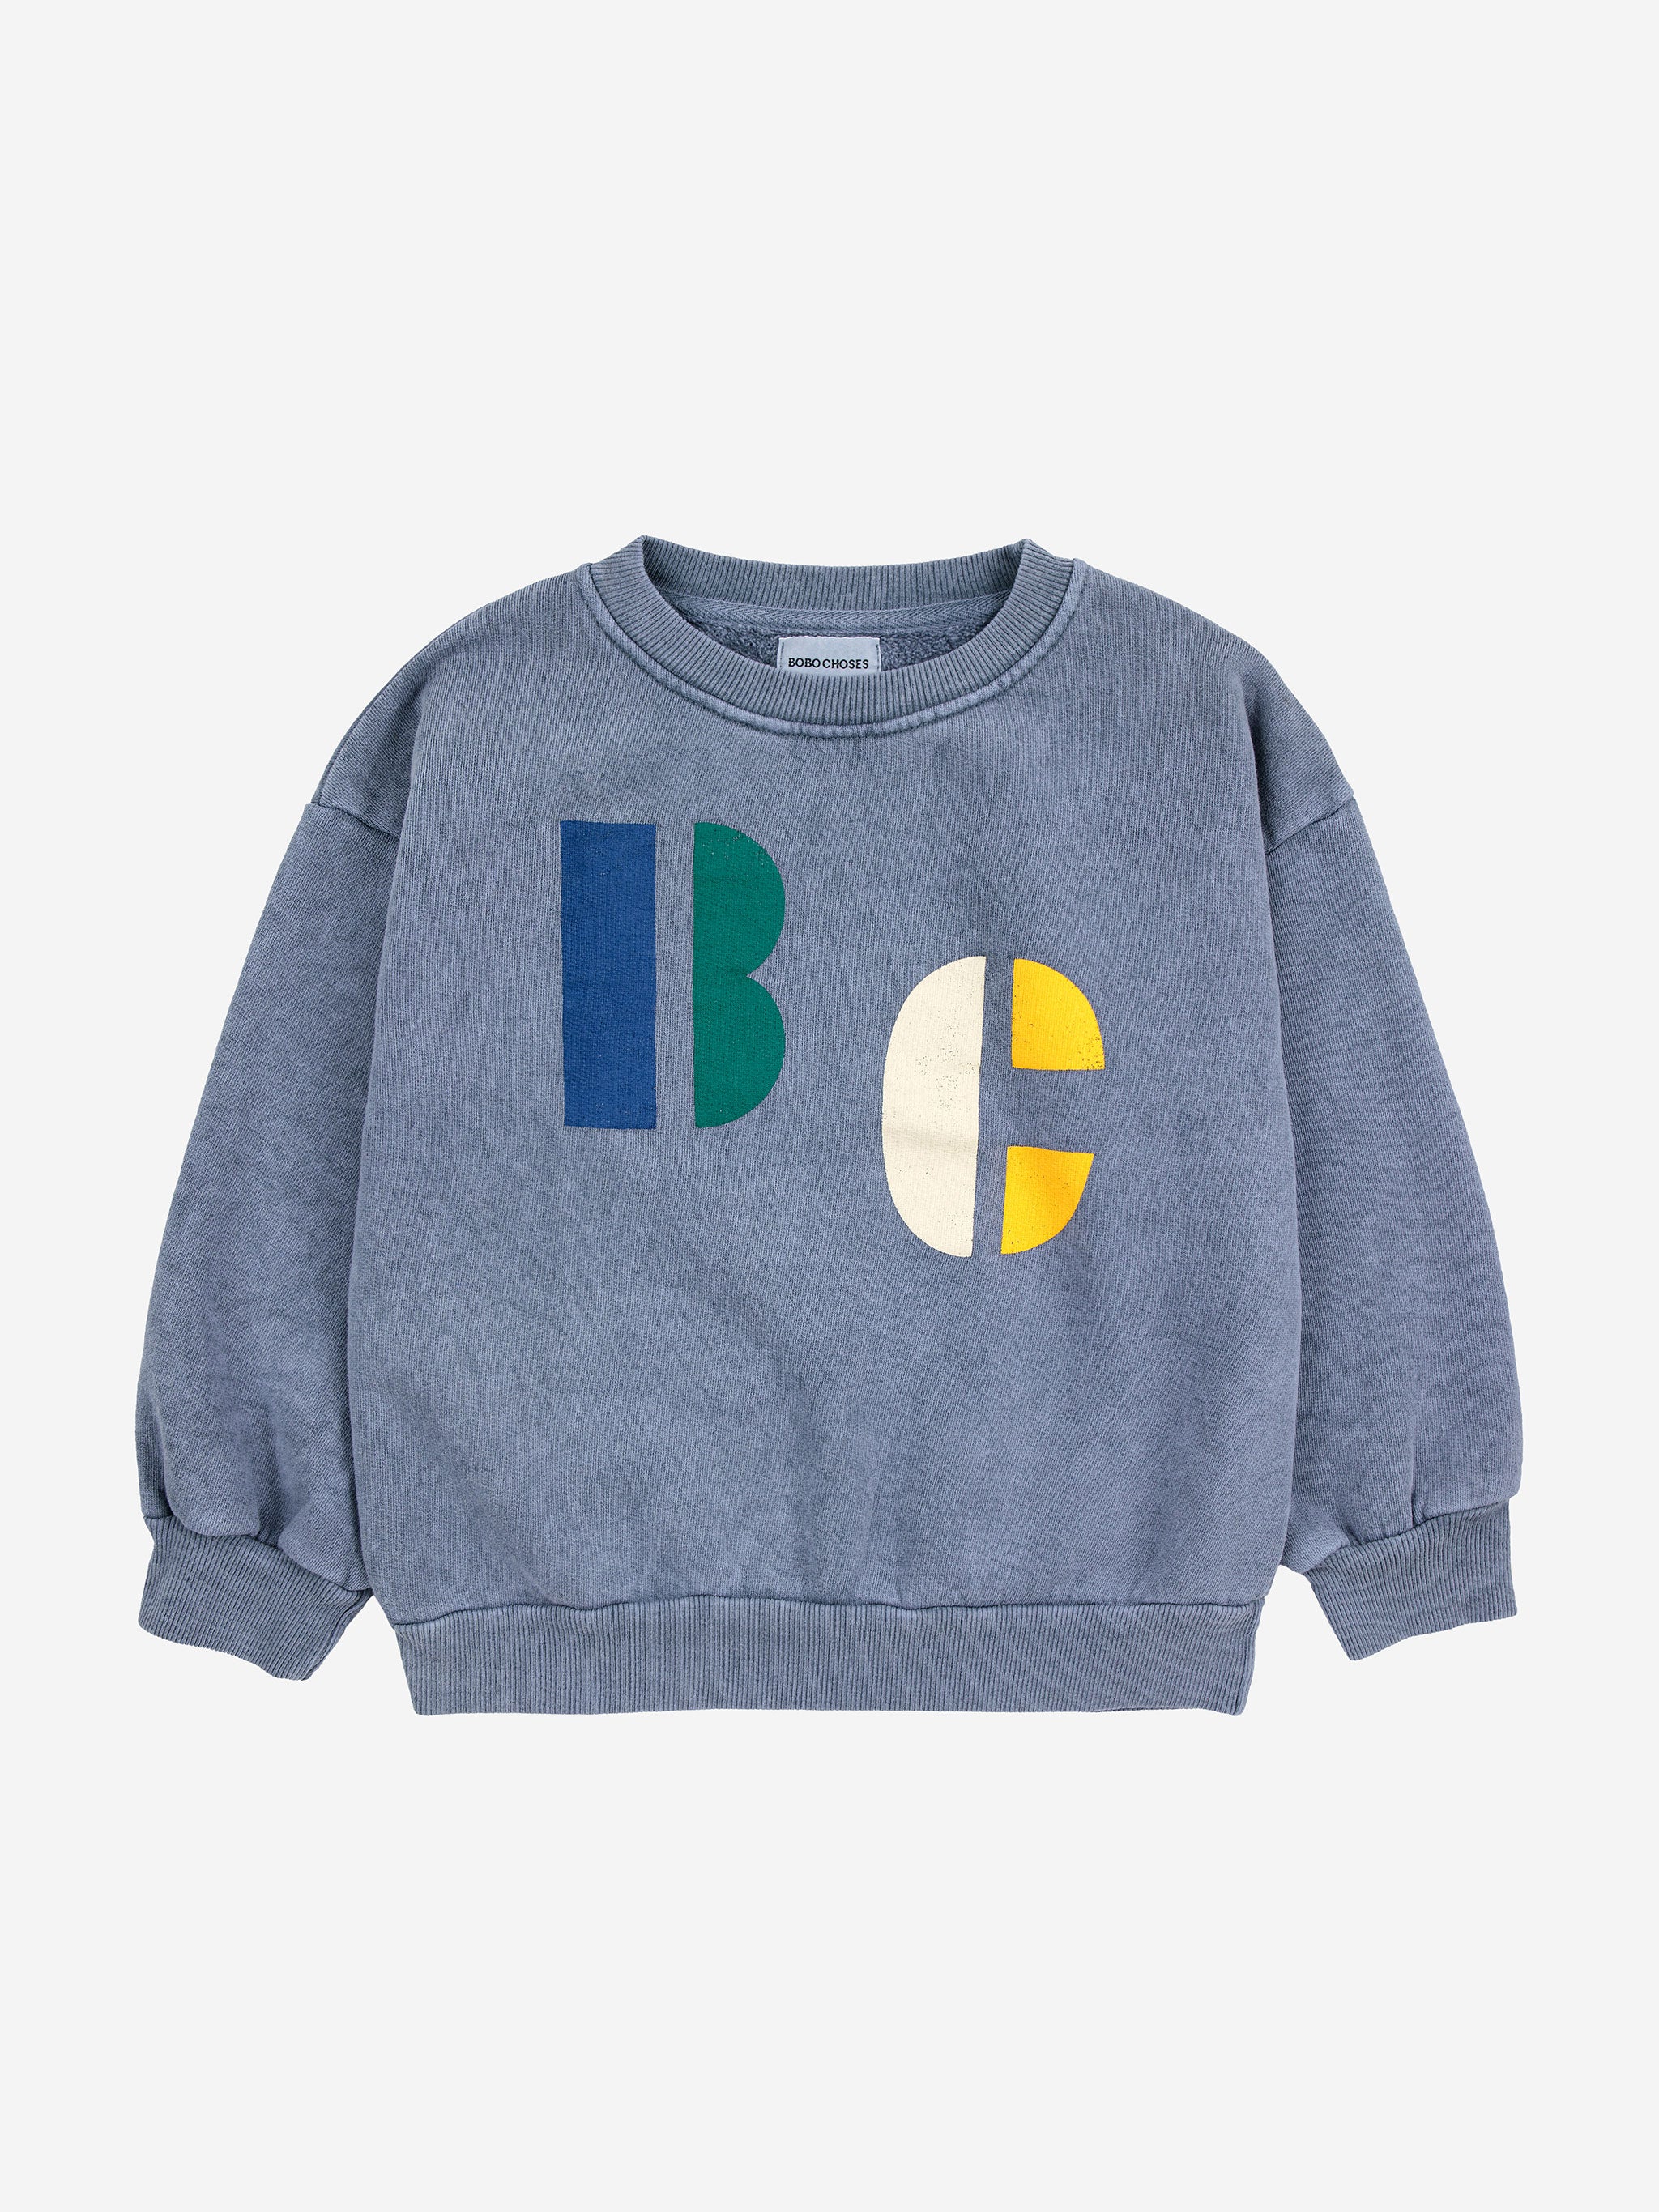 Multicolor B.C sweatshirt – Bobo Choses